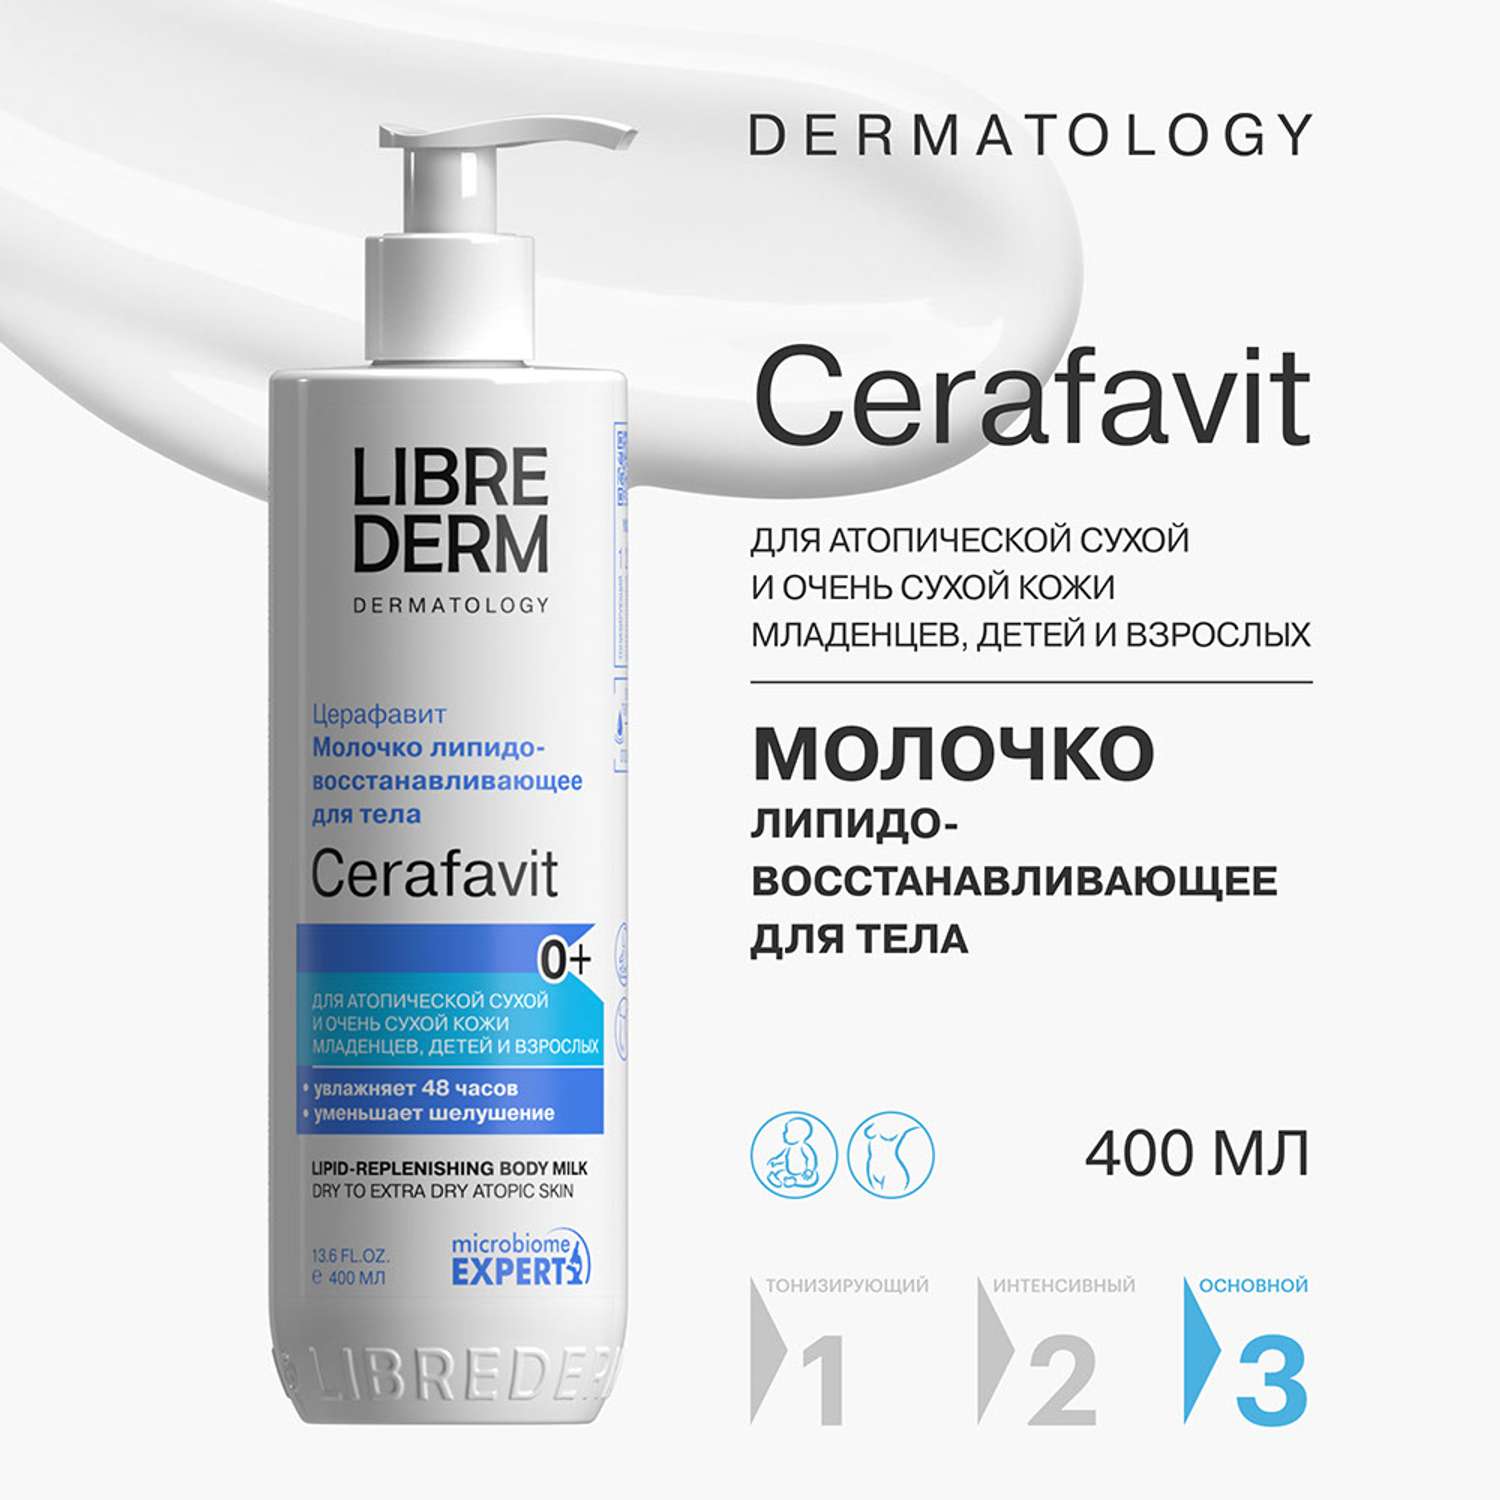 Молочко Librederm CERAFAVIT для сухой и очень сухой кожи с церамидами и пребиотиком 400 мл - фото 2